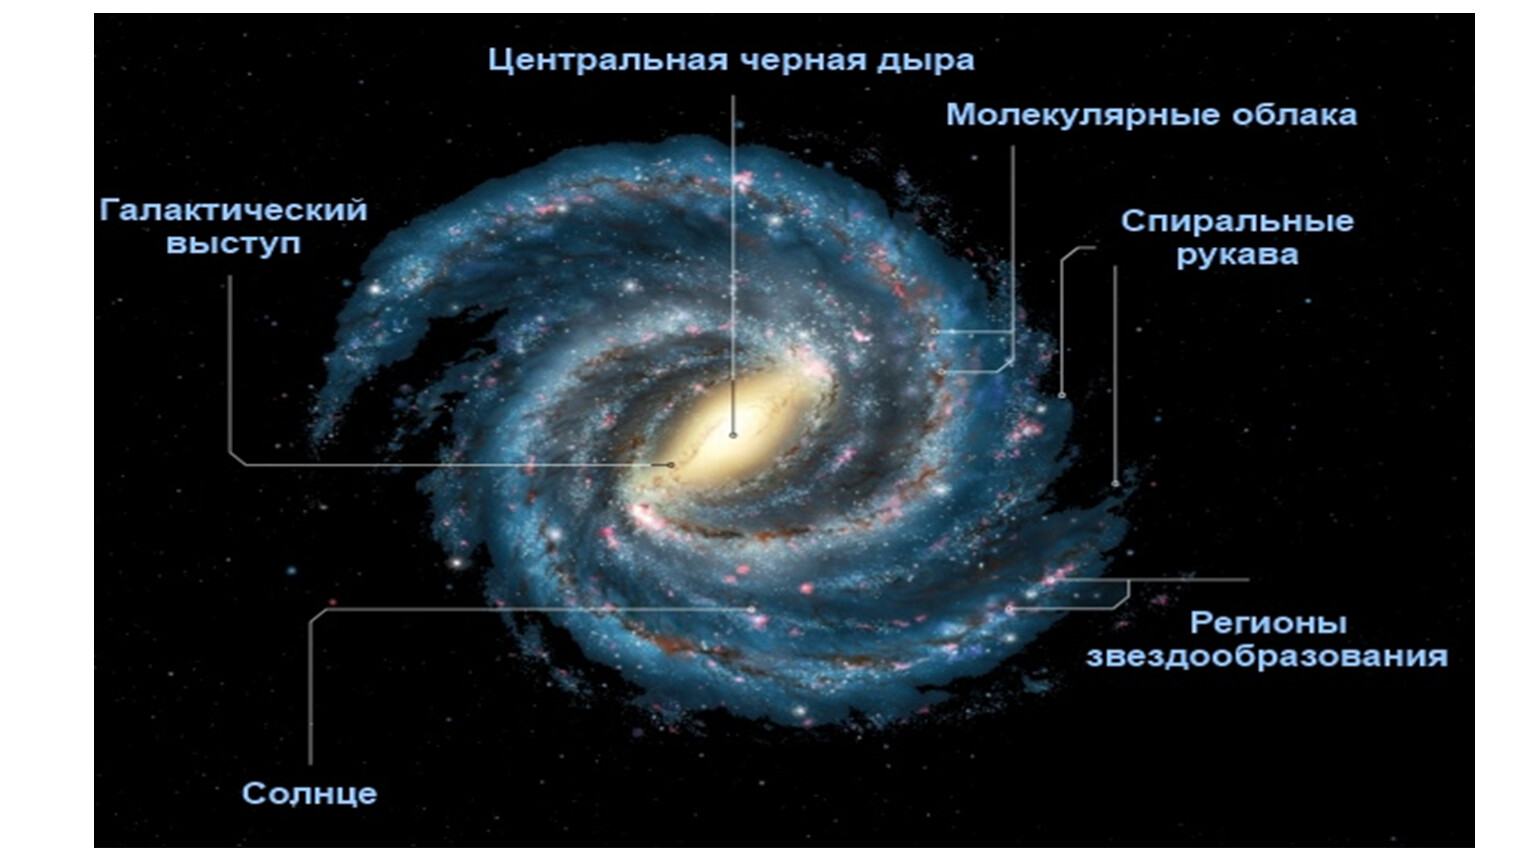 Сколько звезд в галактике млечный. Строение Галактики Млечный путь астрономия. Строение Галактики Млечный путь вид сбоку. Ядро Галактики Млечный путь. Строение Галактики Млечный путь рукава.